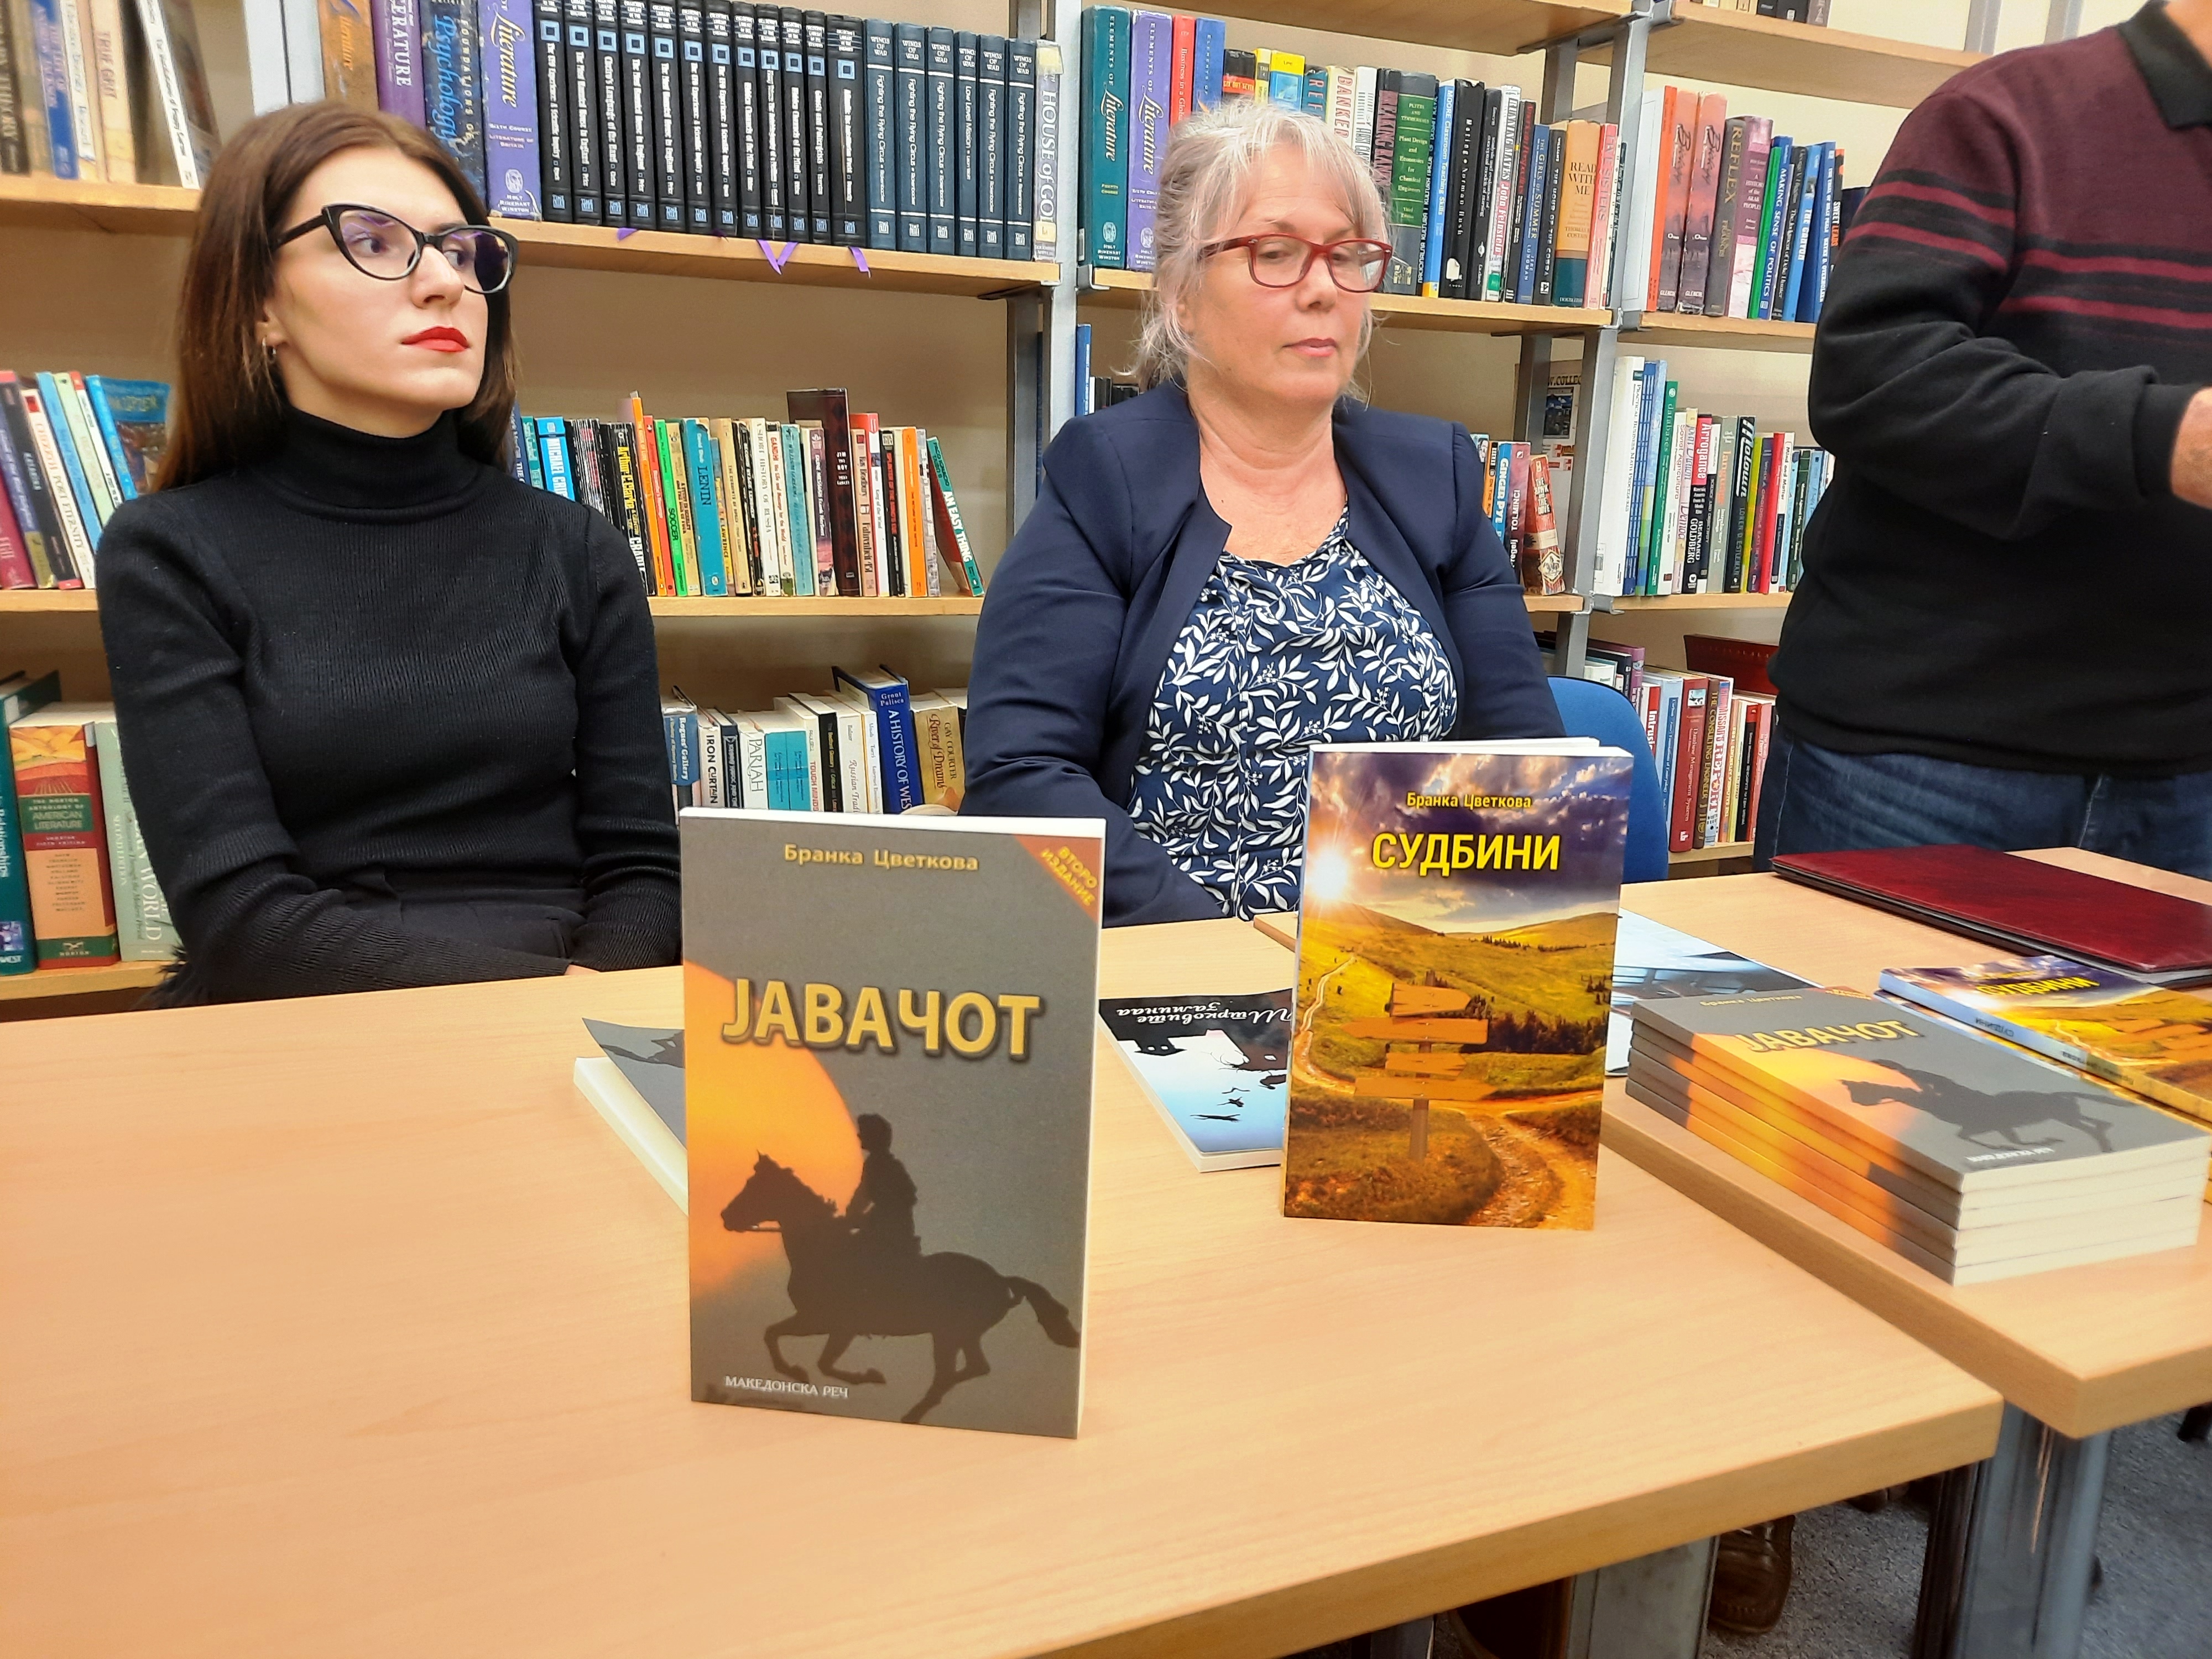 Библиотека ФЕТКИН /Промовирана книгата „Јавачот„ на Бранка Цветкова 